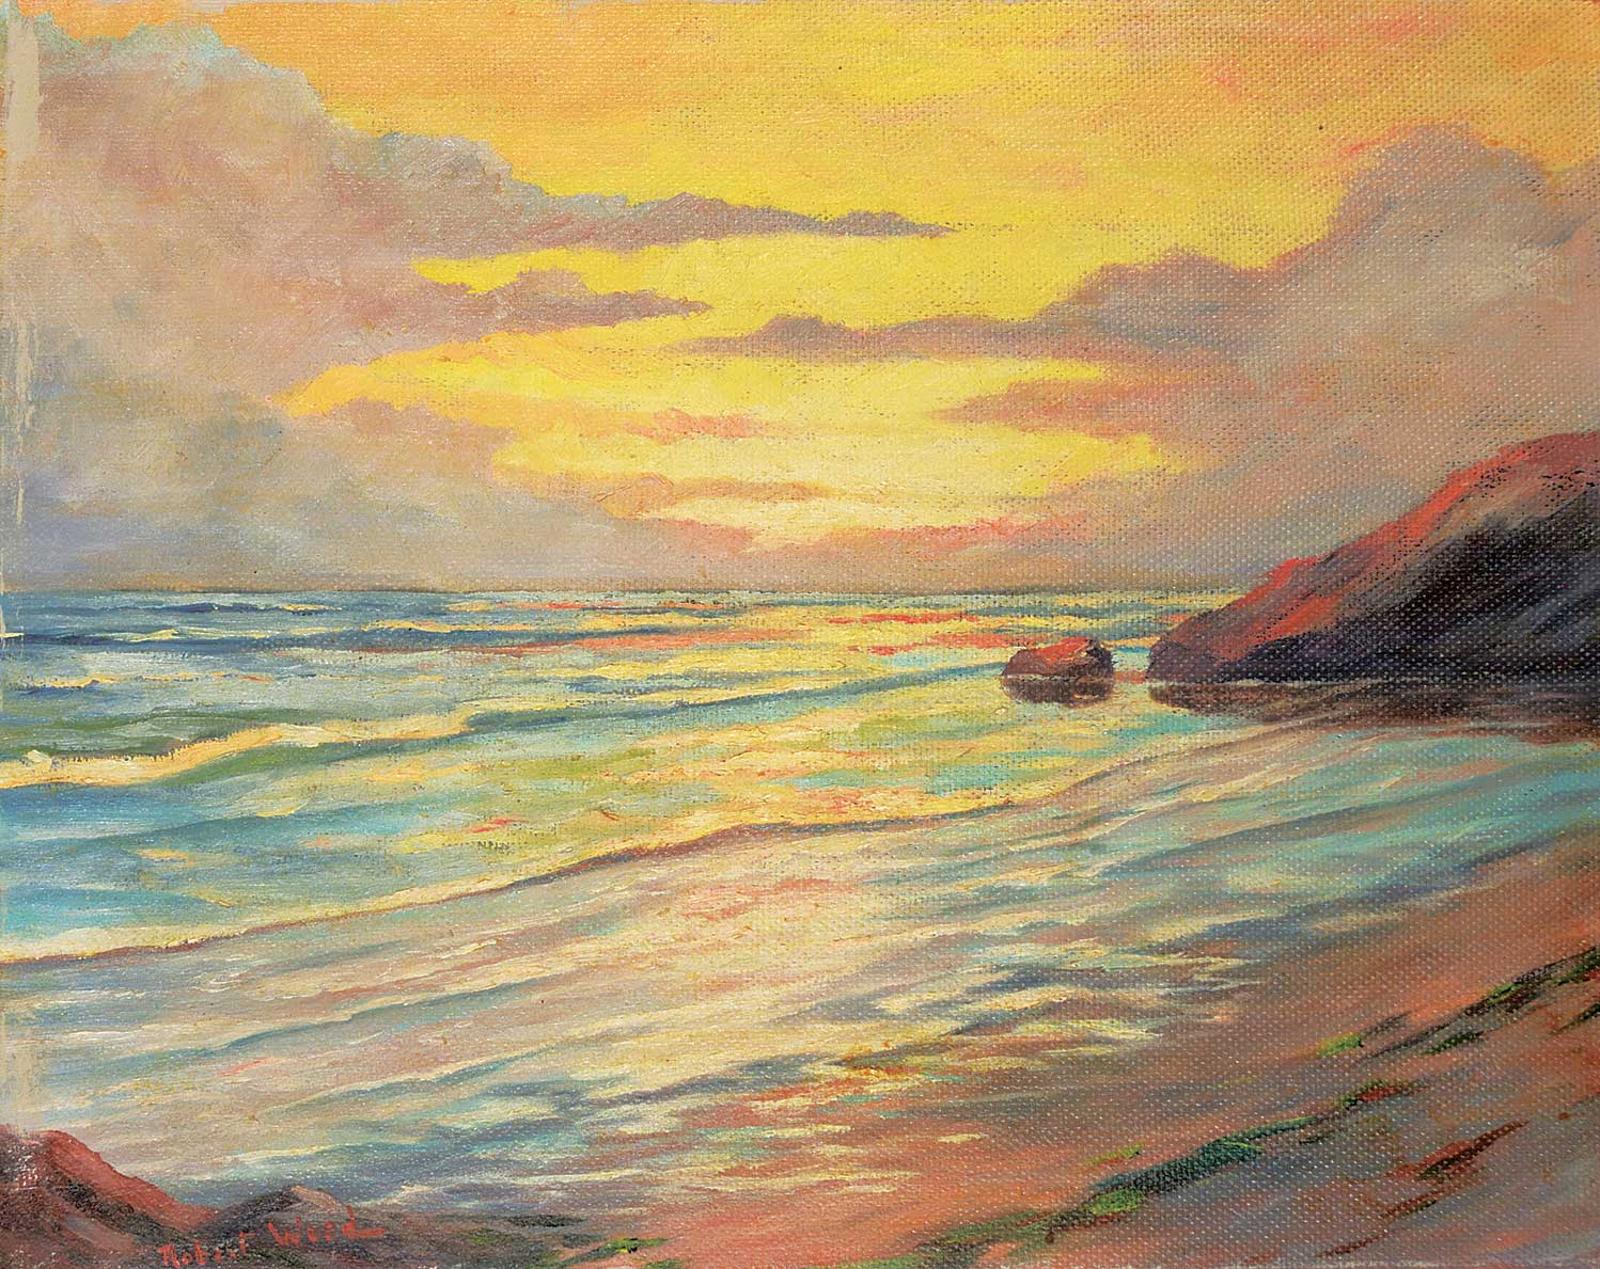 Robert Edward Wood (1919-1980) - Untitled - Coastal Sunset